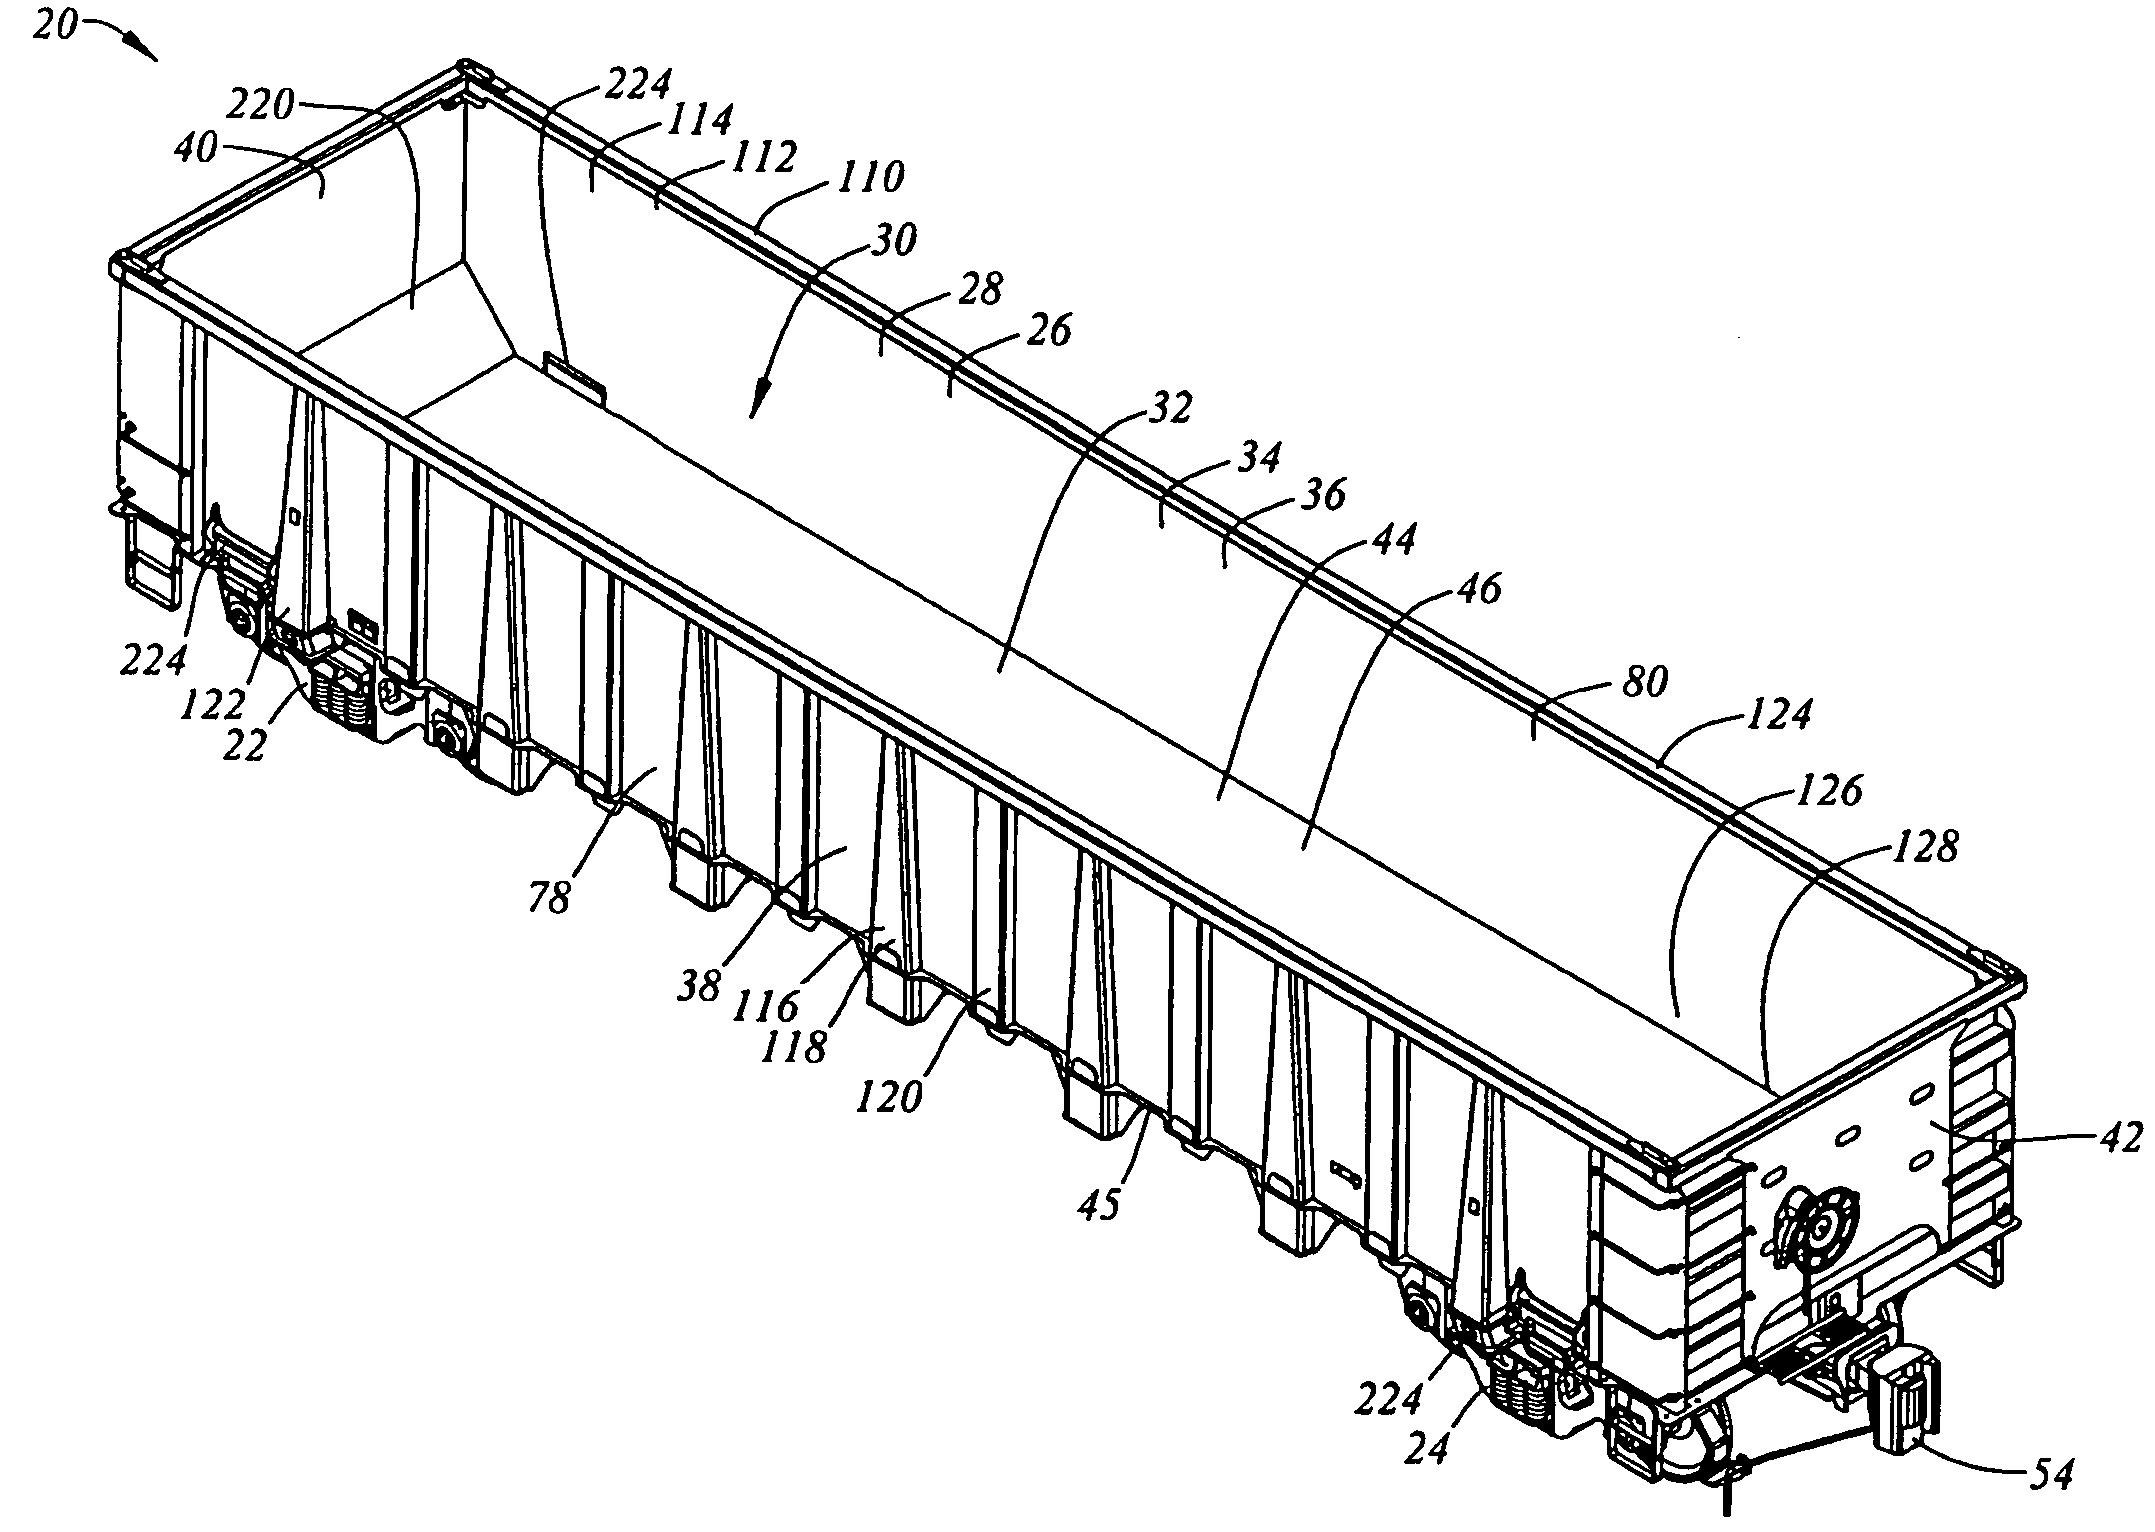 Rail road freight car